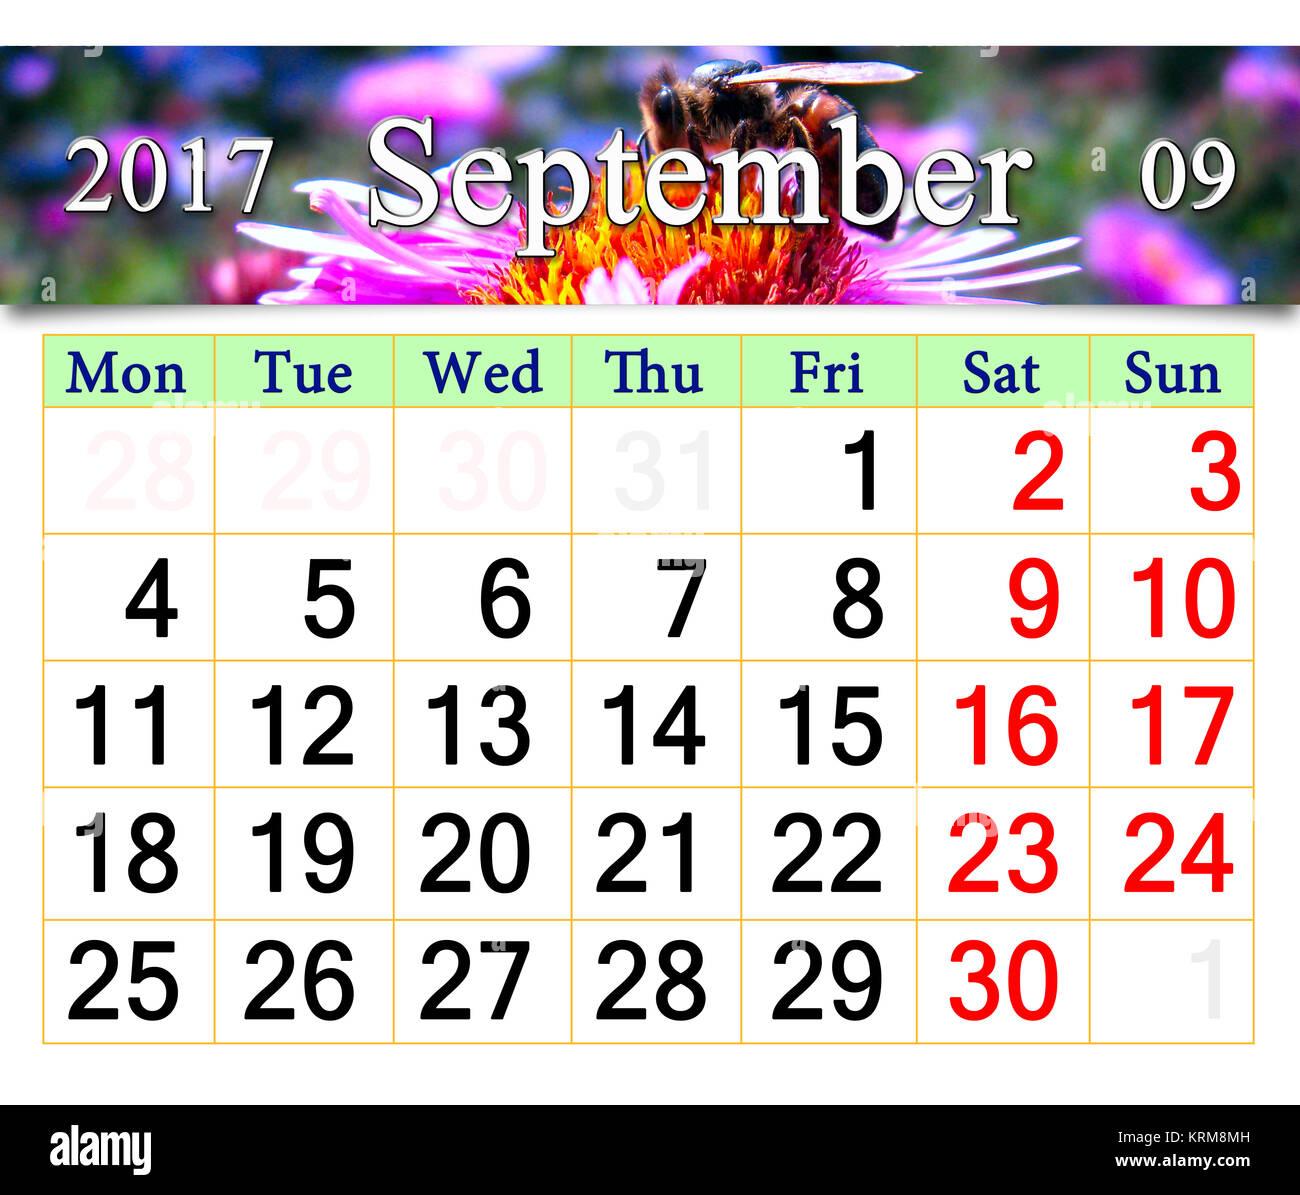 Calendrier pour 2017 Septembre avec abeille sur l'aster rose Banque D'Images